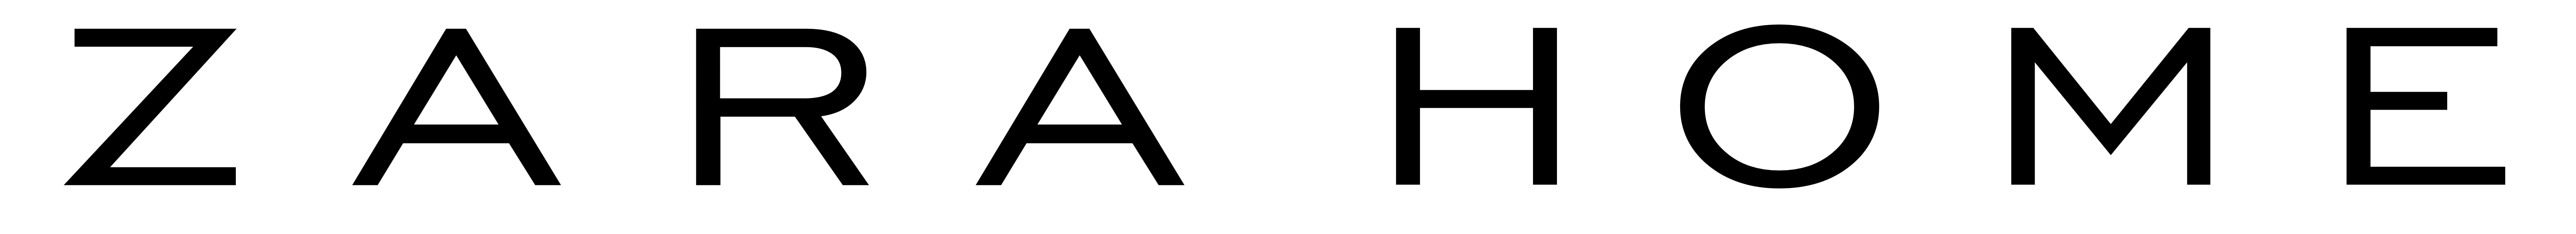 Zara logo Прозрачное изображение